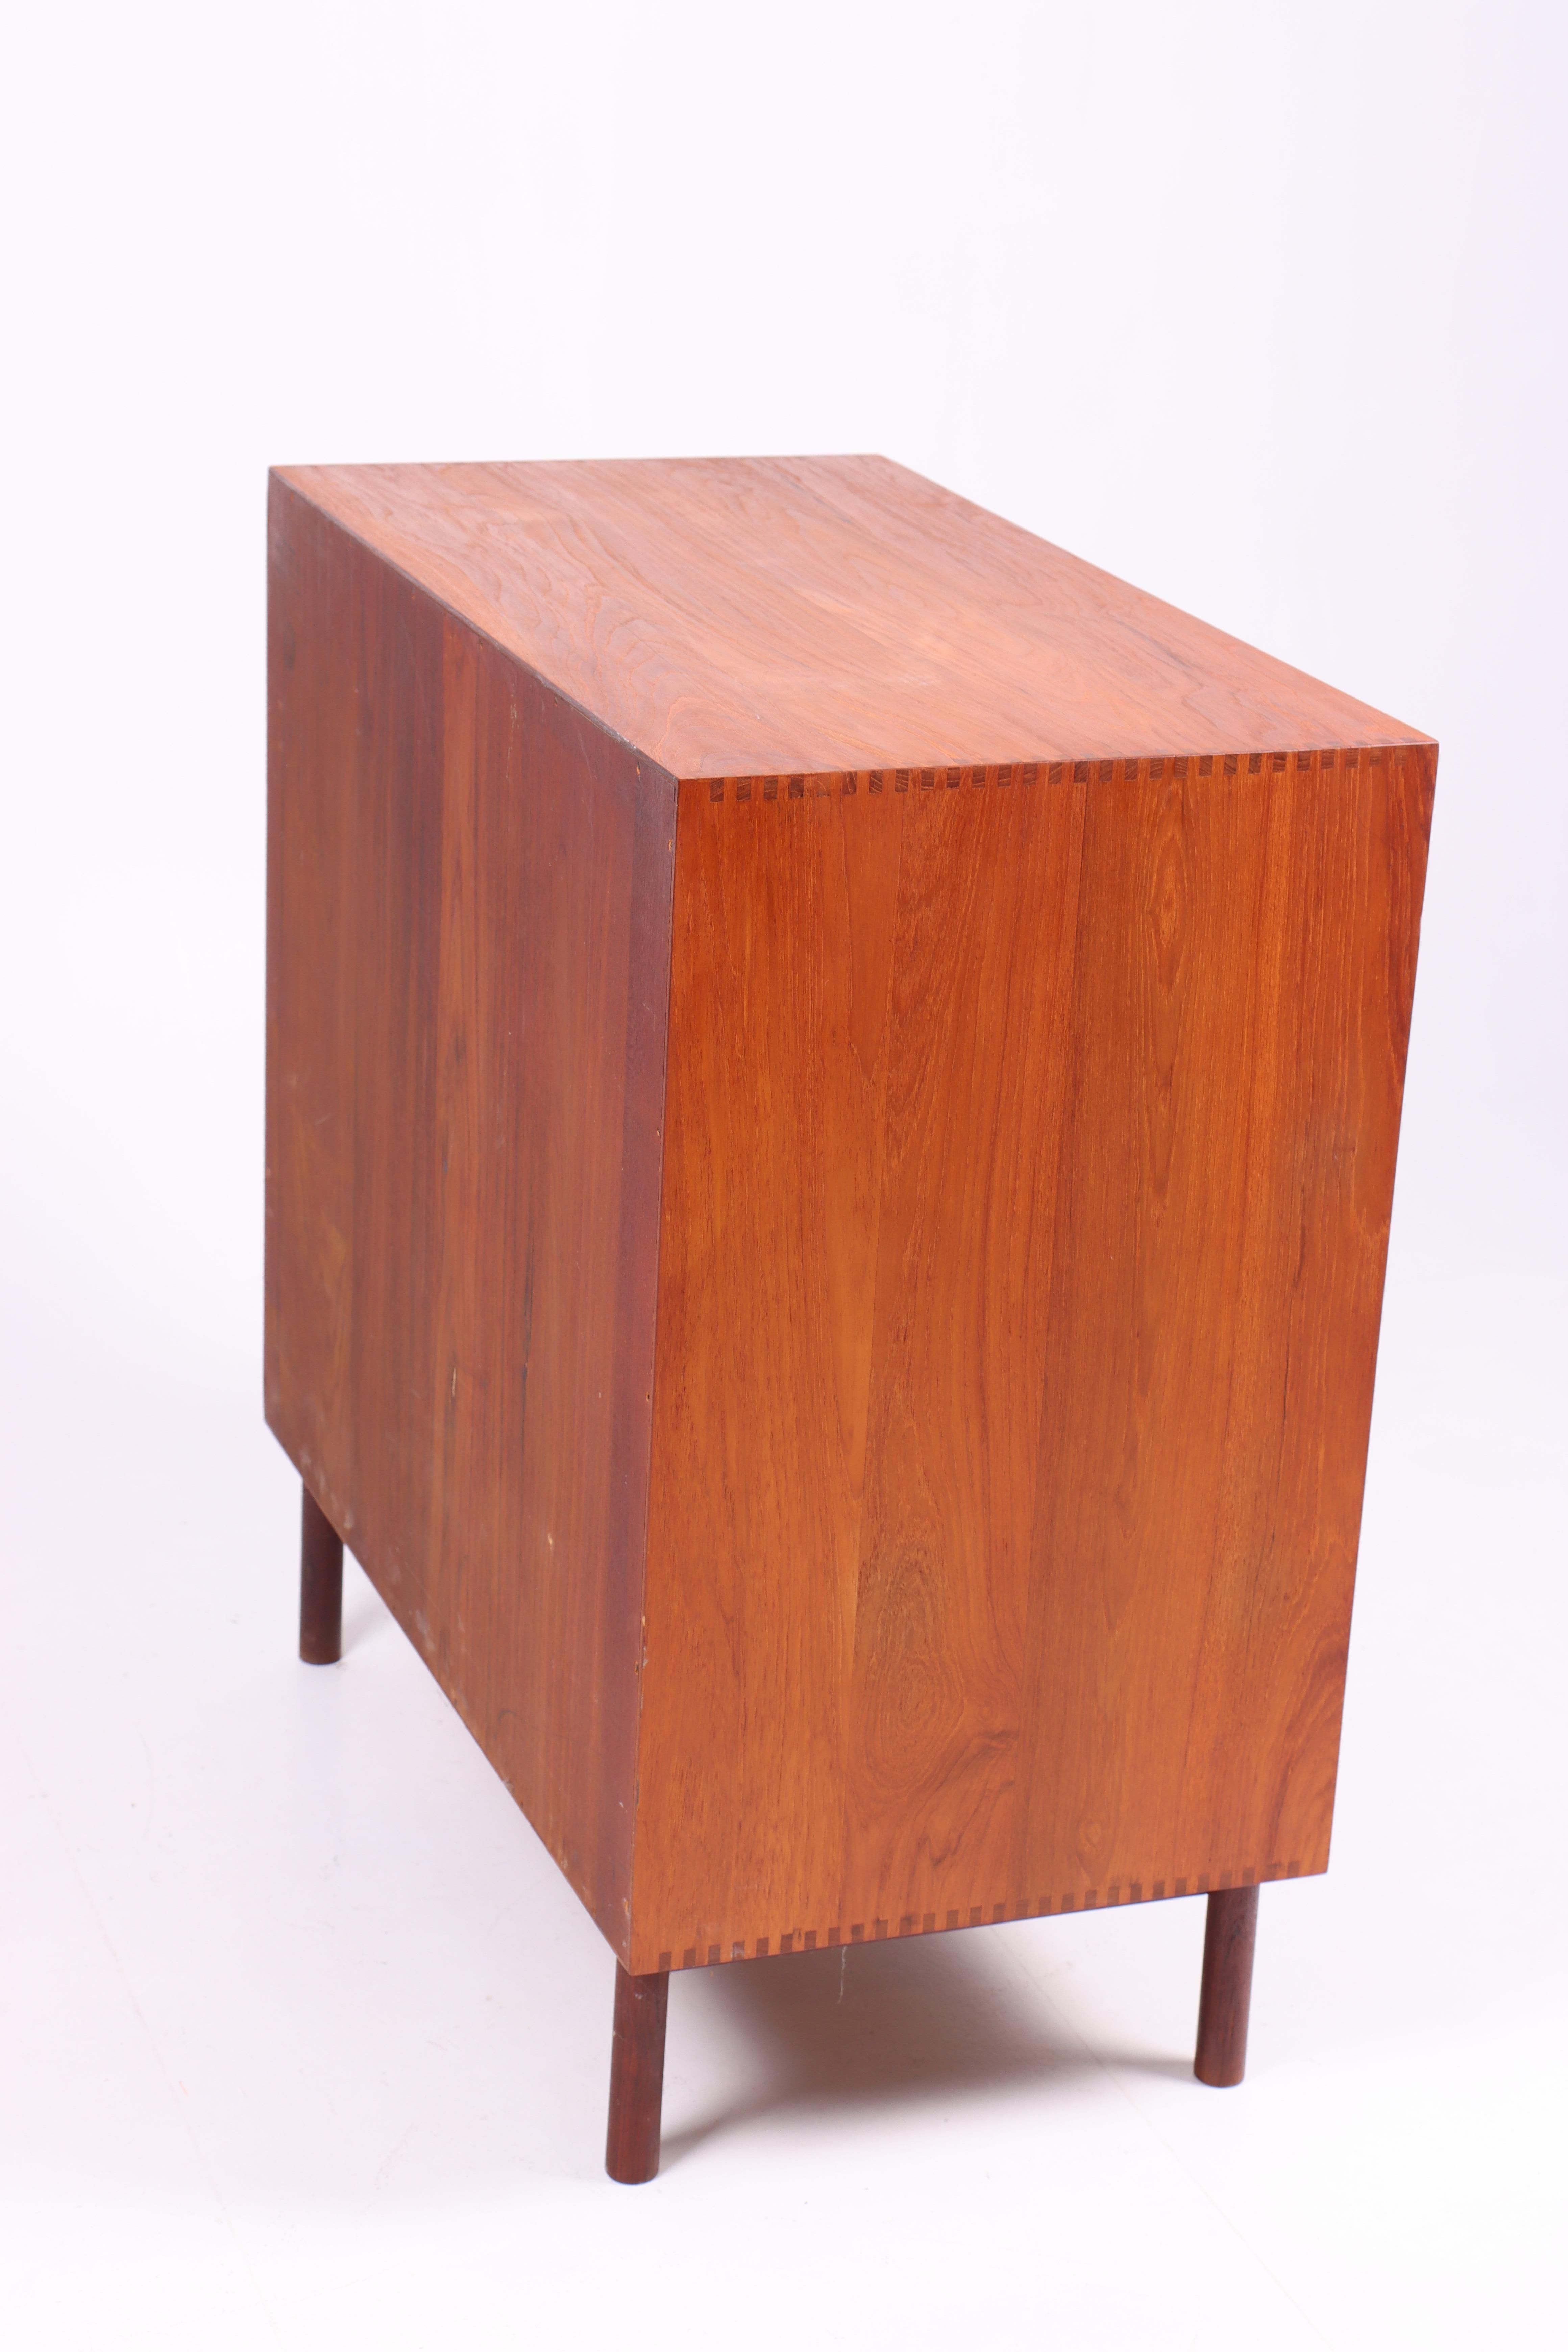 Midcentury Cabinet in Solid Teak Designed by Hvidt & Mølgaard, 1950s For Sale 2